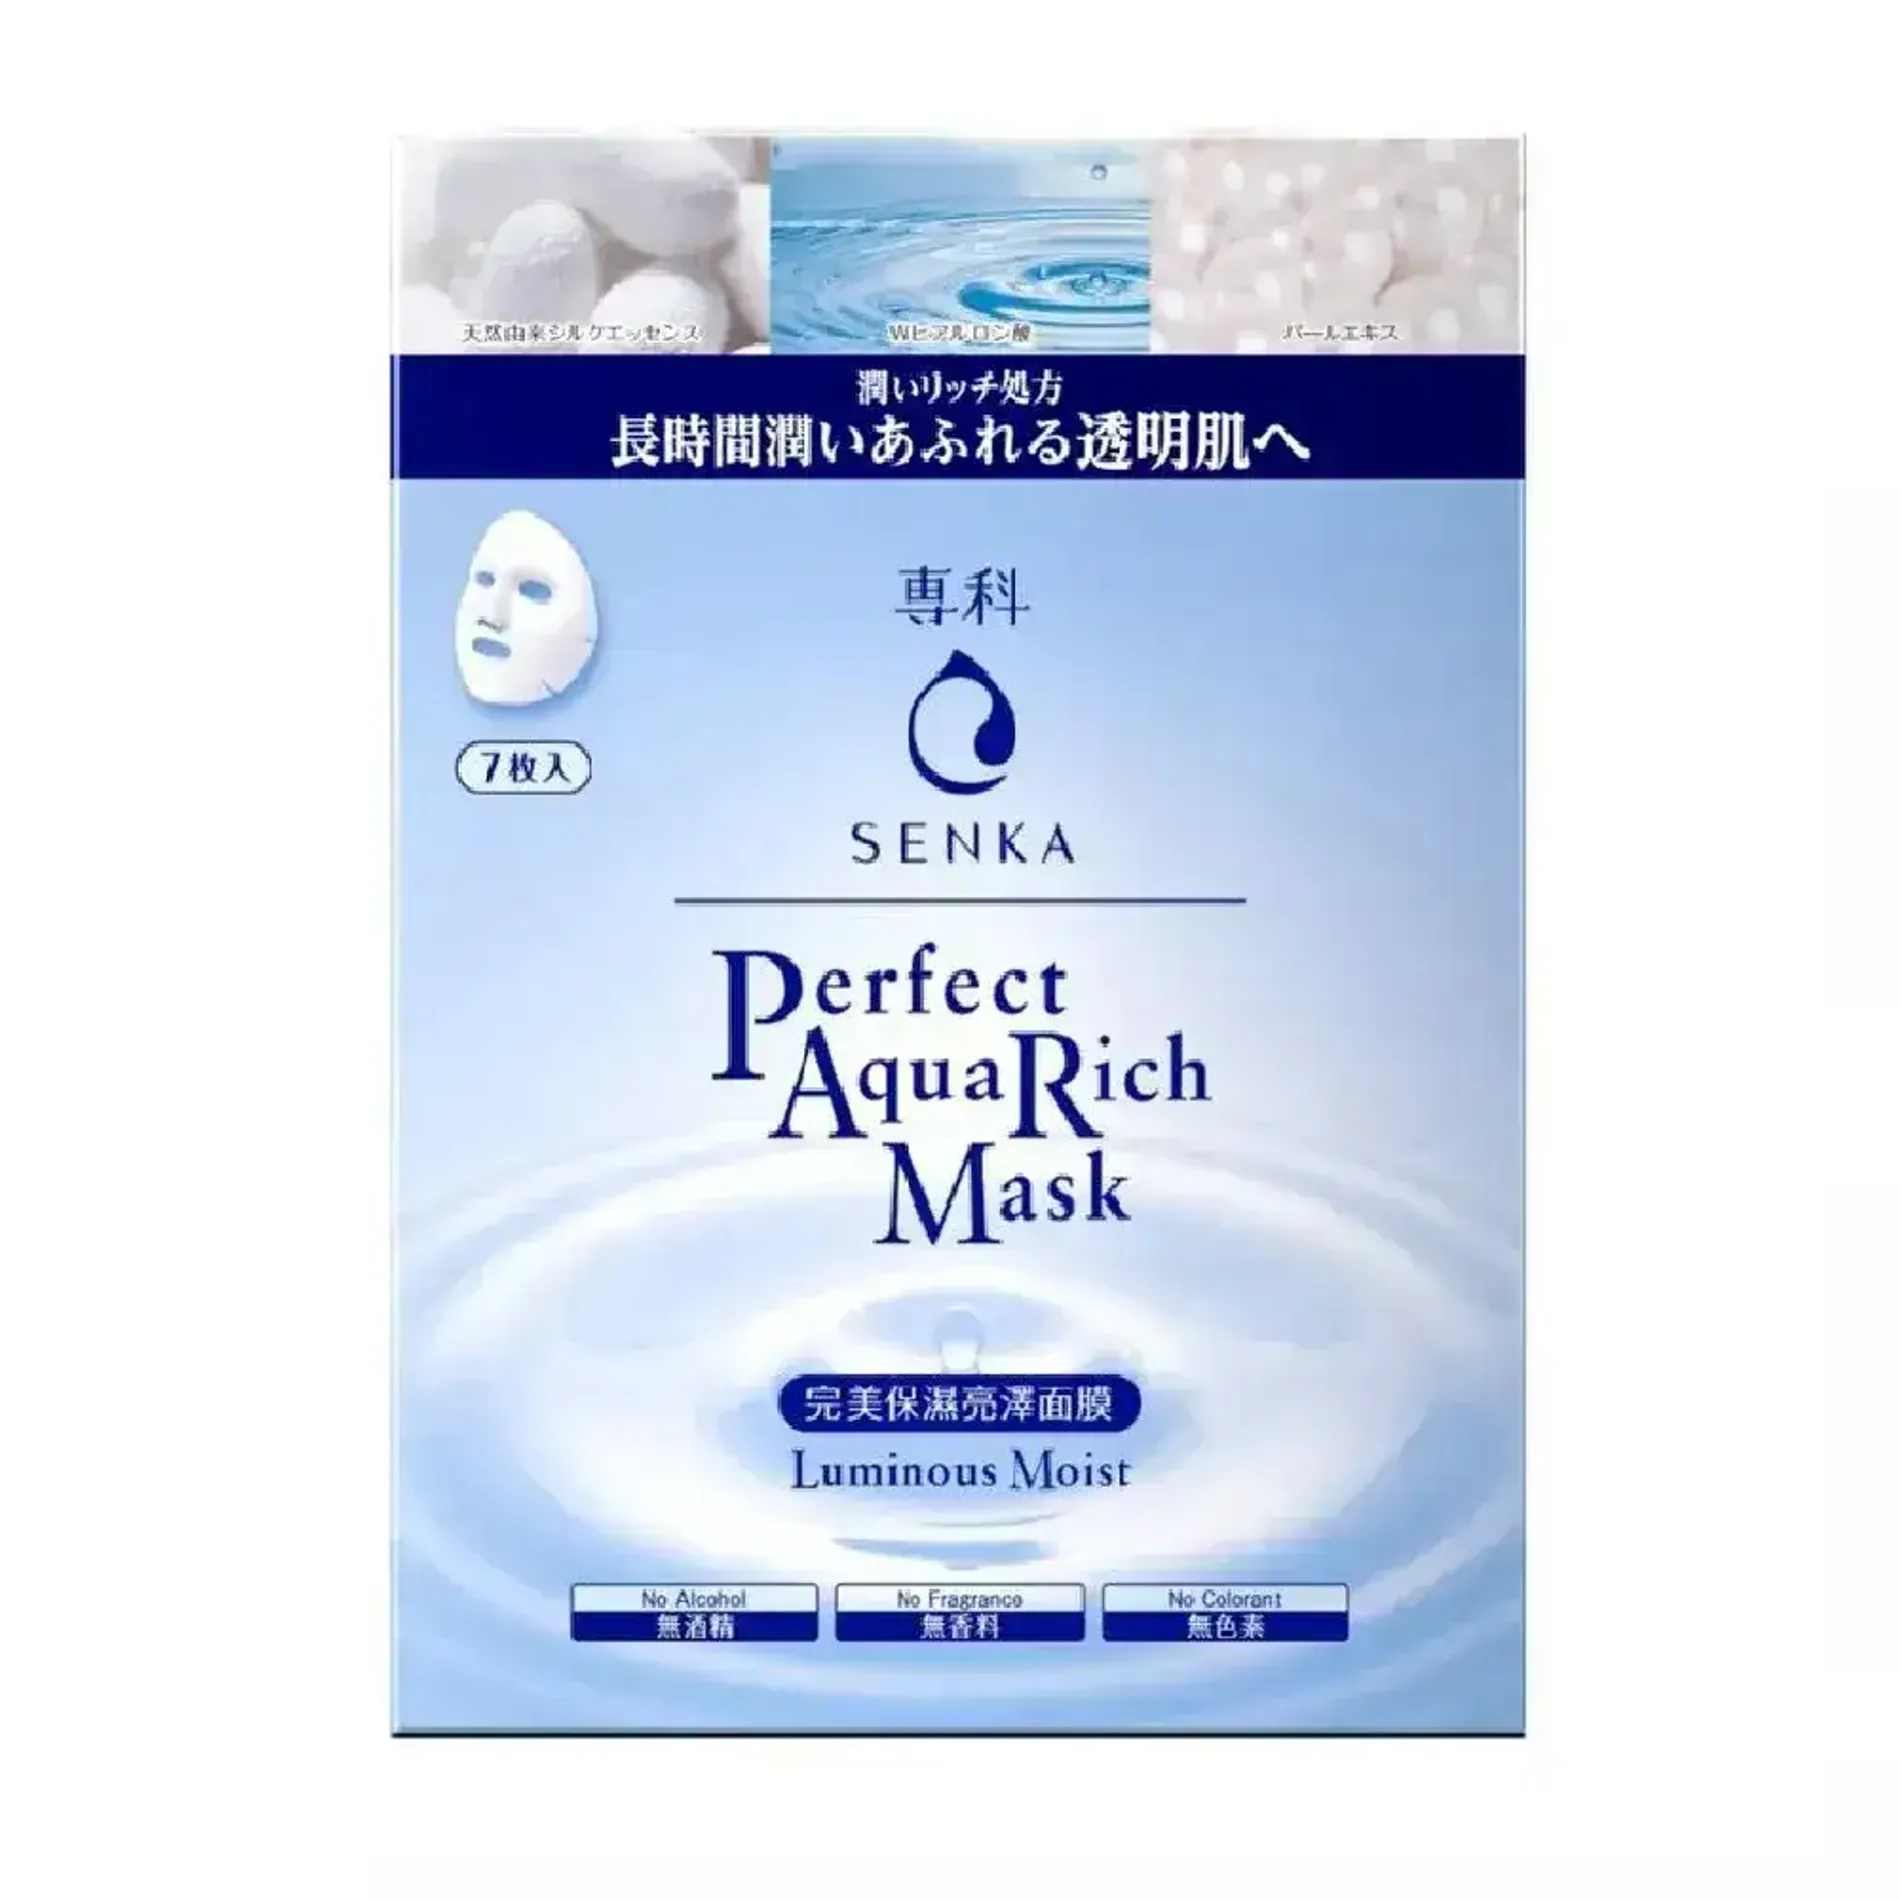 mat-na-duong-am-senka-perfect-aqua-rich-luminous-moist-mask-23g-2